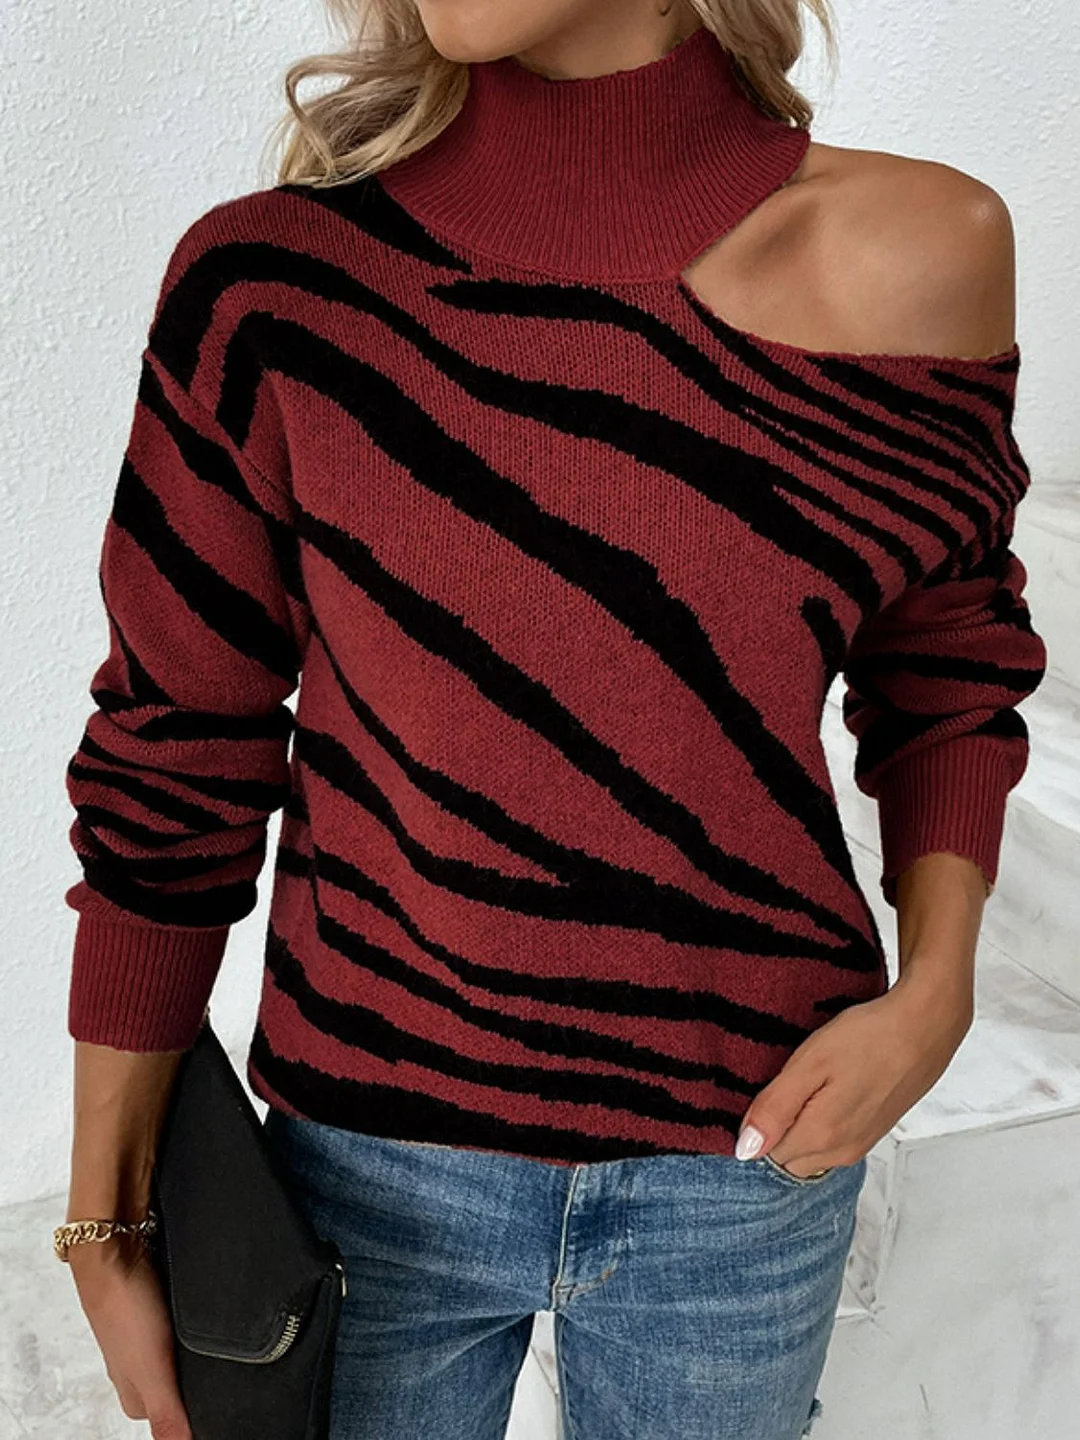 Uforever21 Tiger Print Cold-Shoulder High Neck Sweater